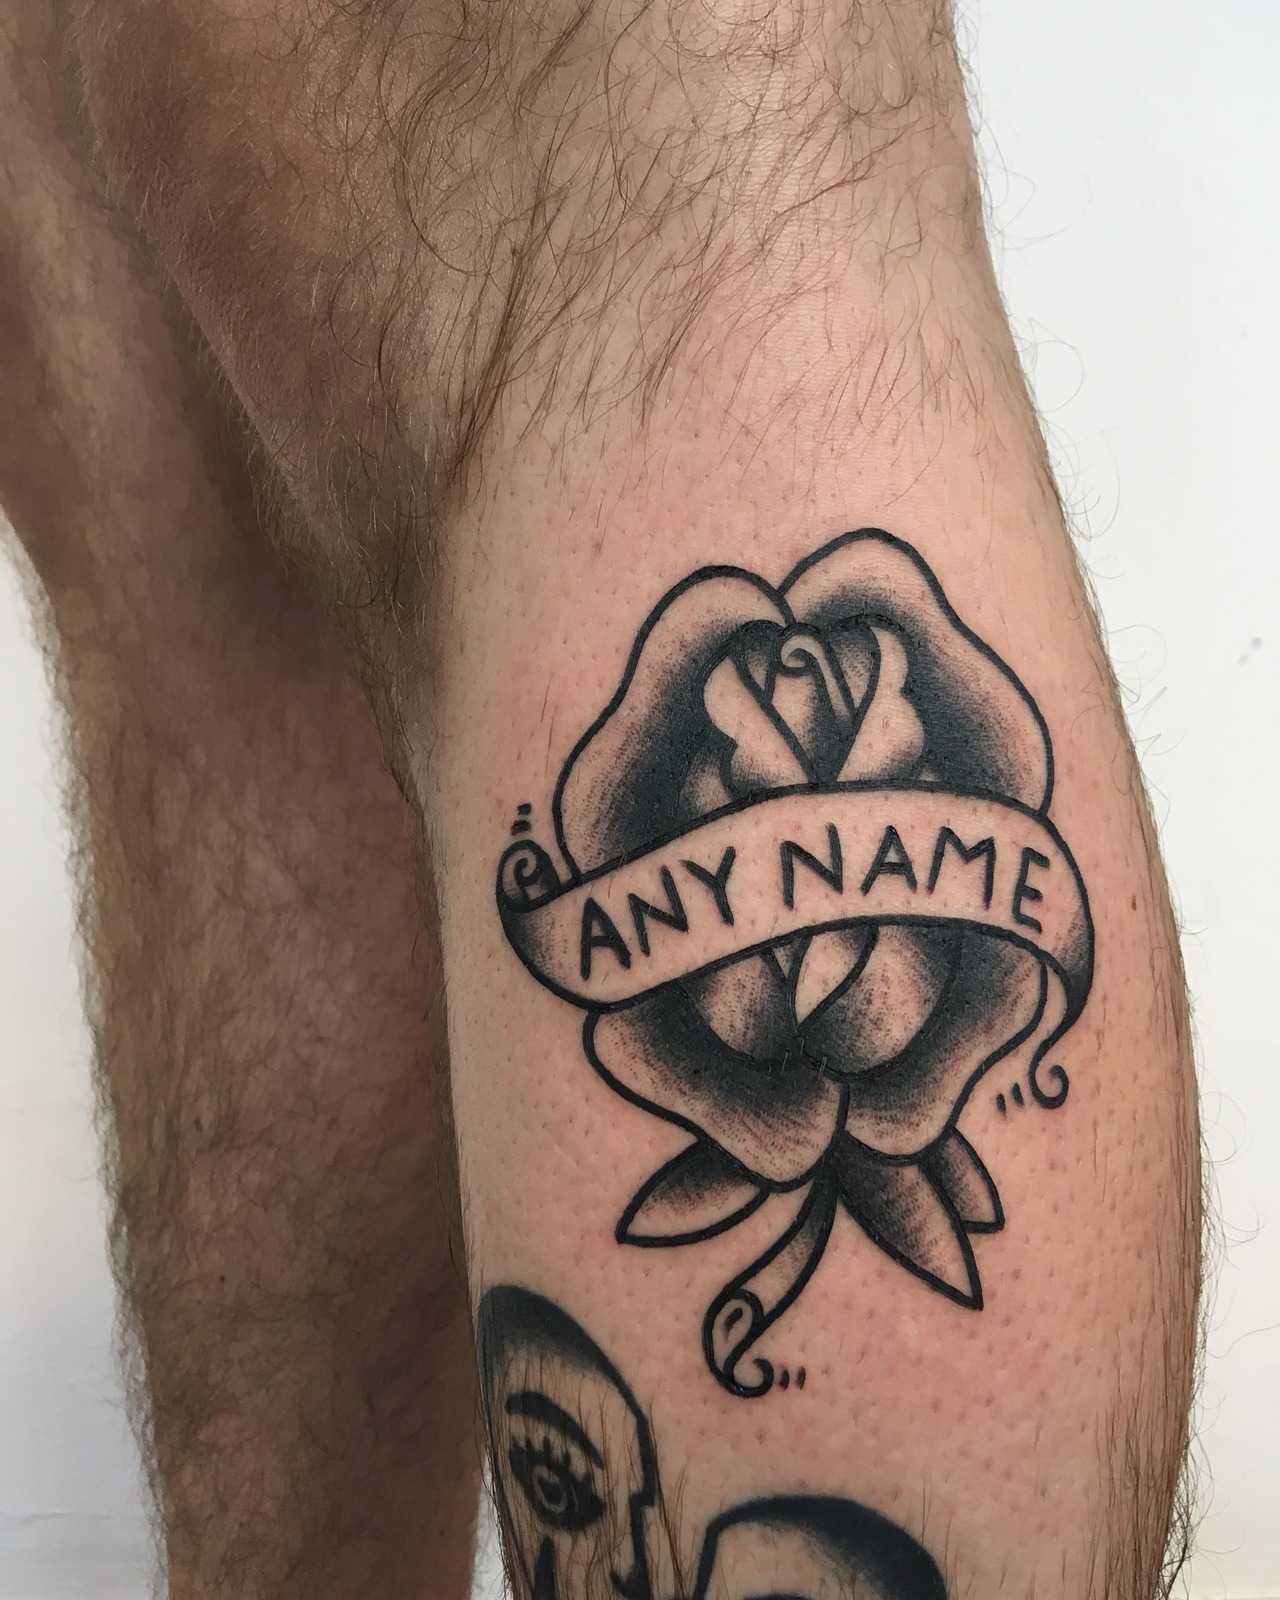 Any name tattoo